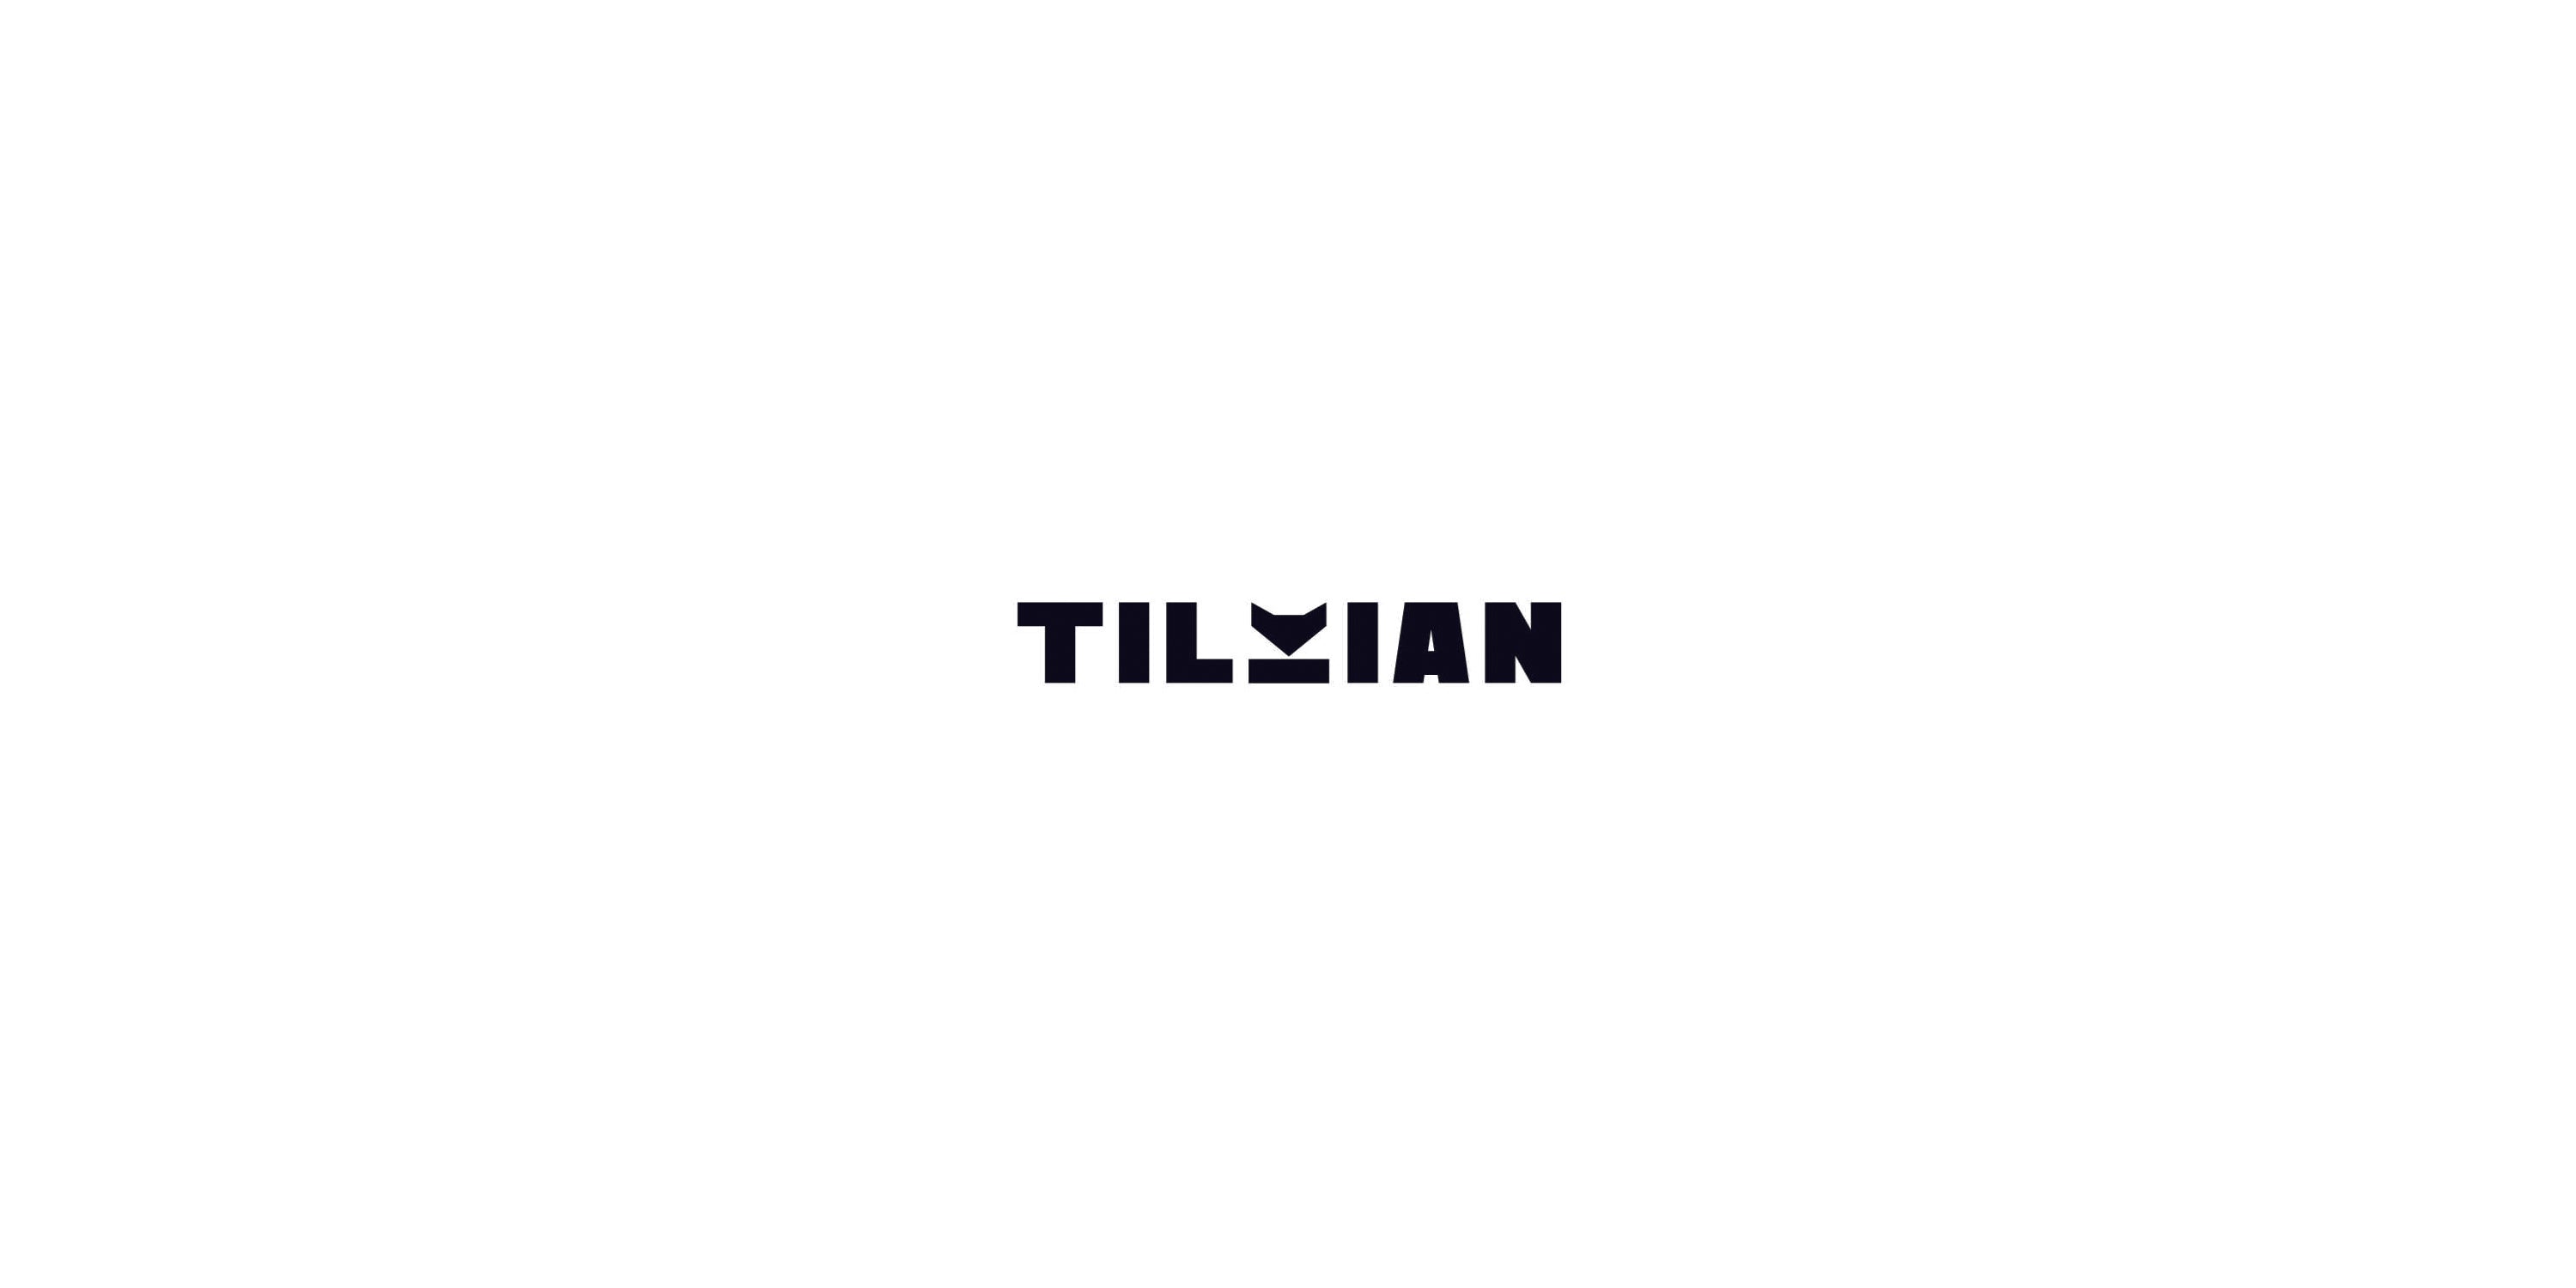 Tilkian logo